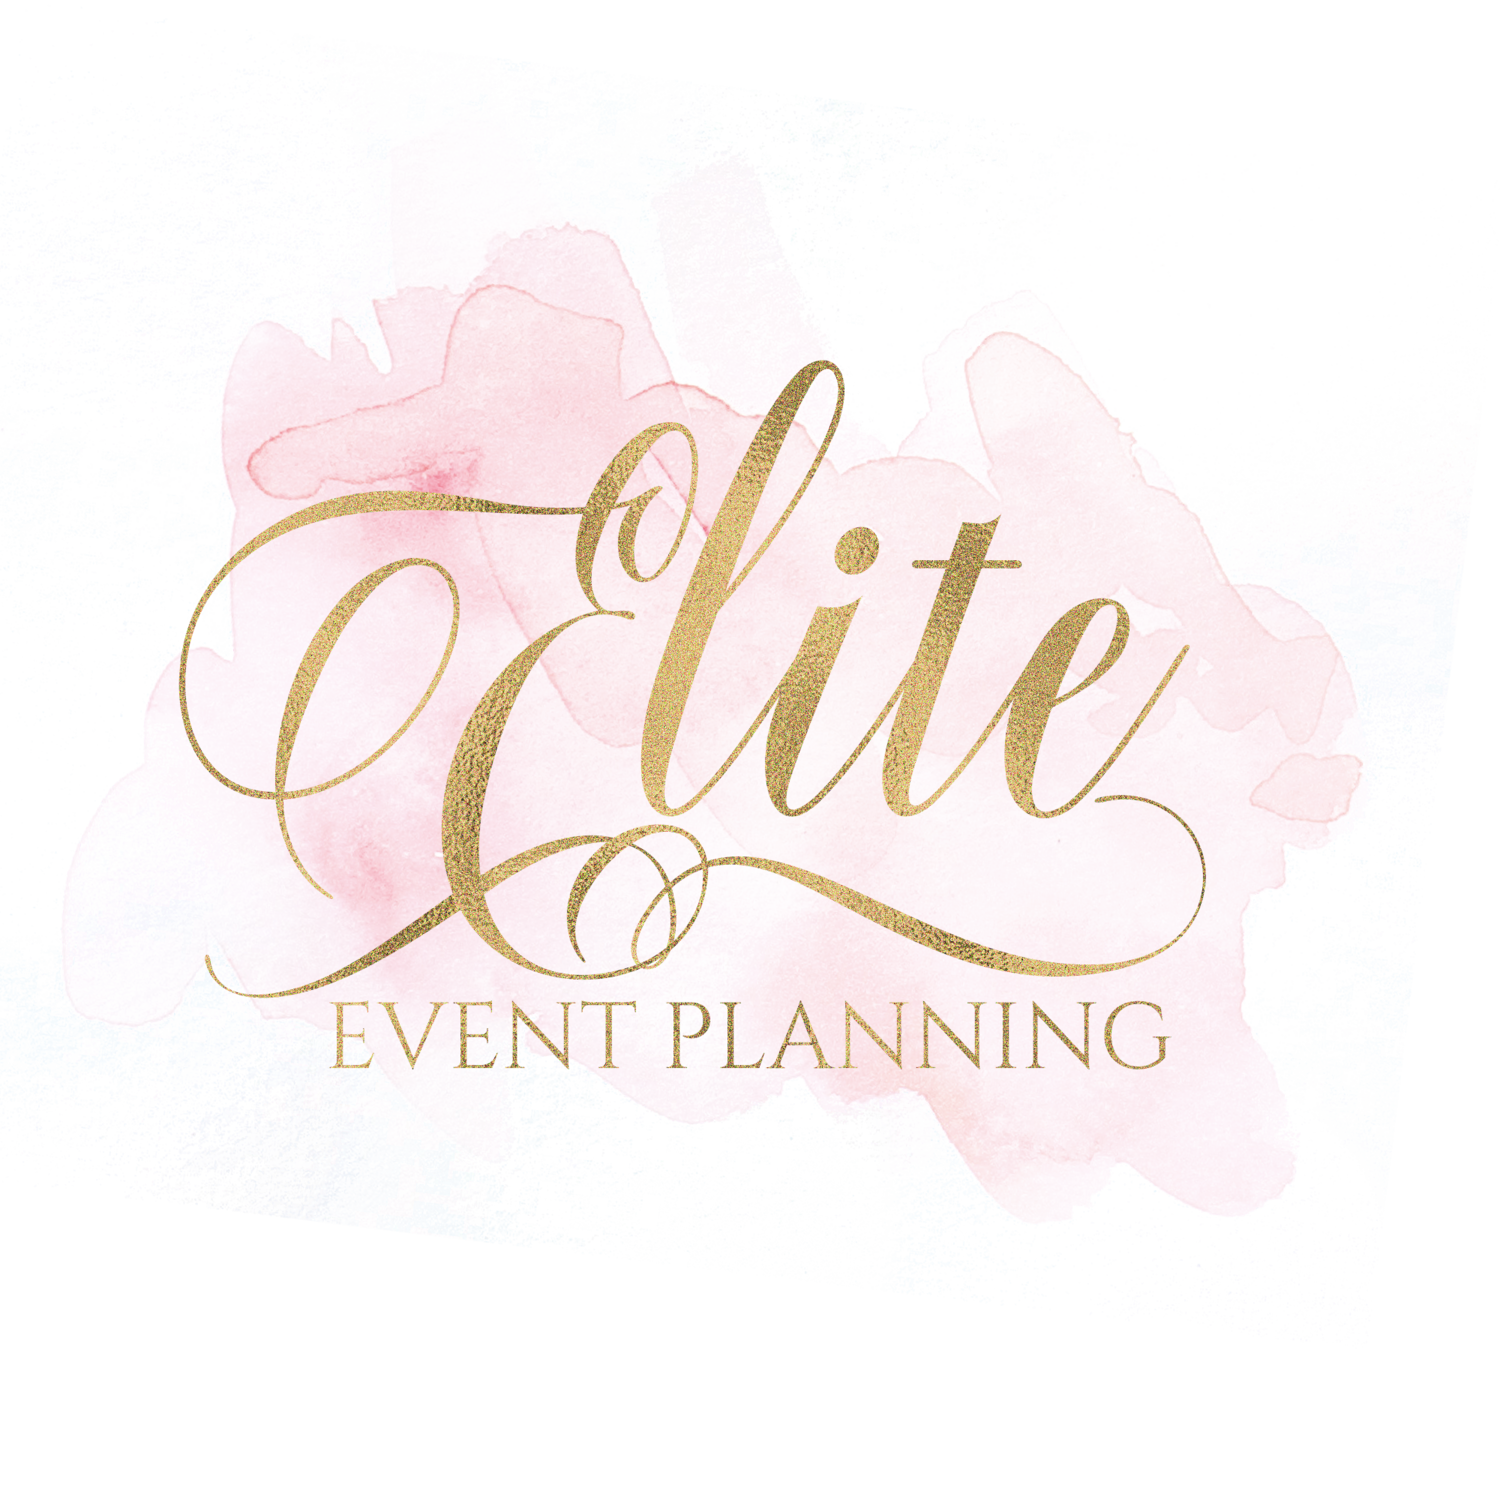 Elite Event Planning